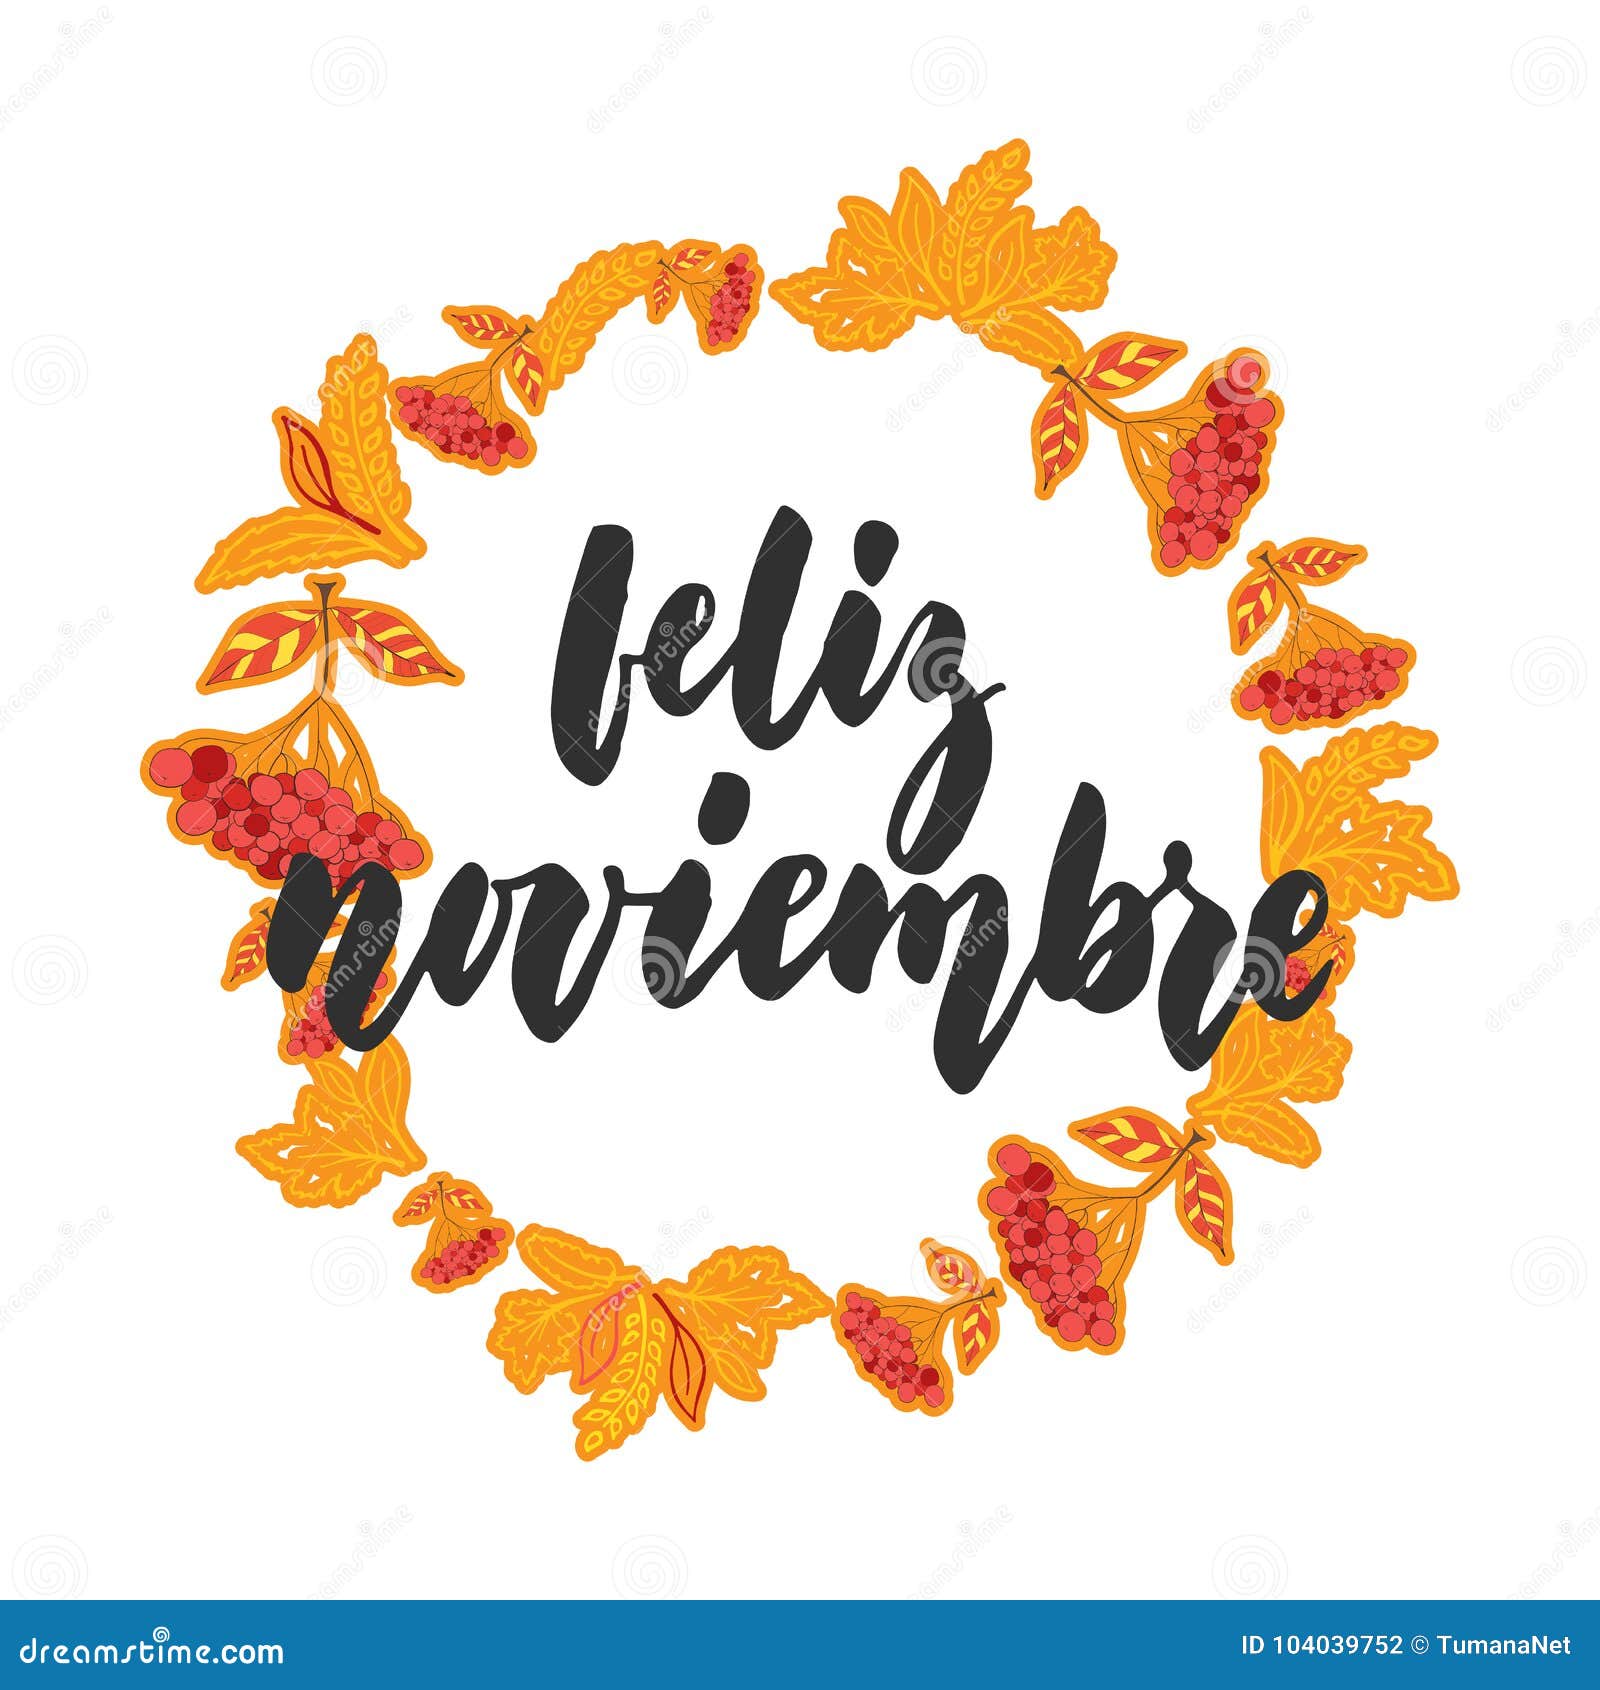 feliz noviembre - happy november in spanish, hand drawn latin autumn month